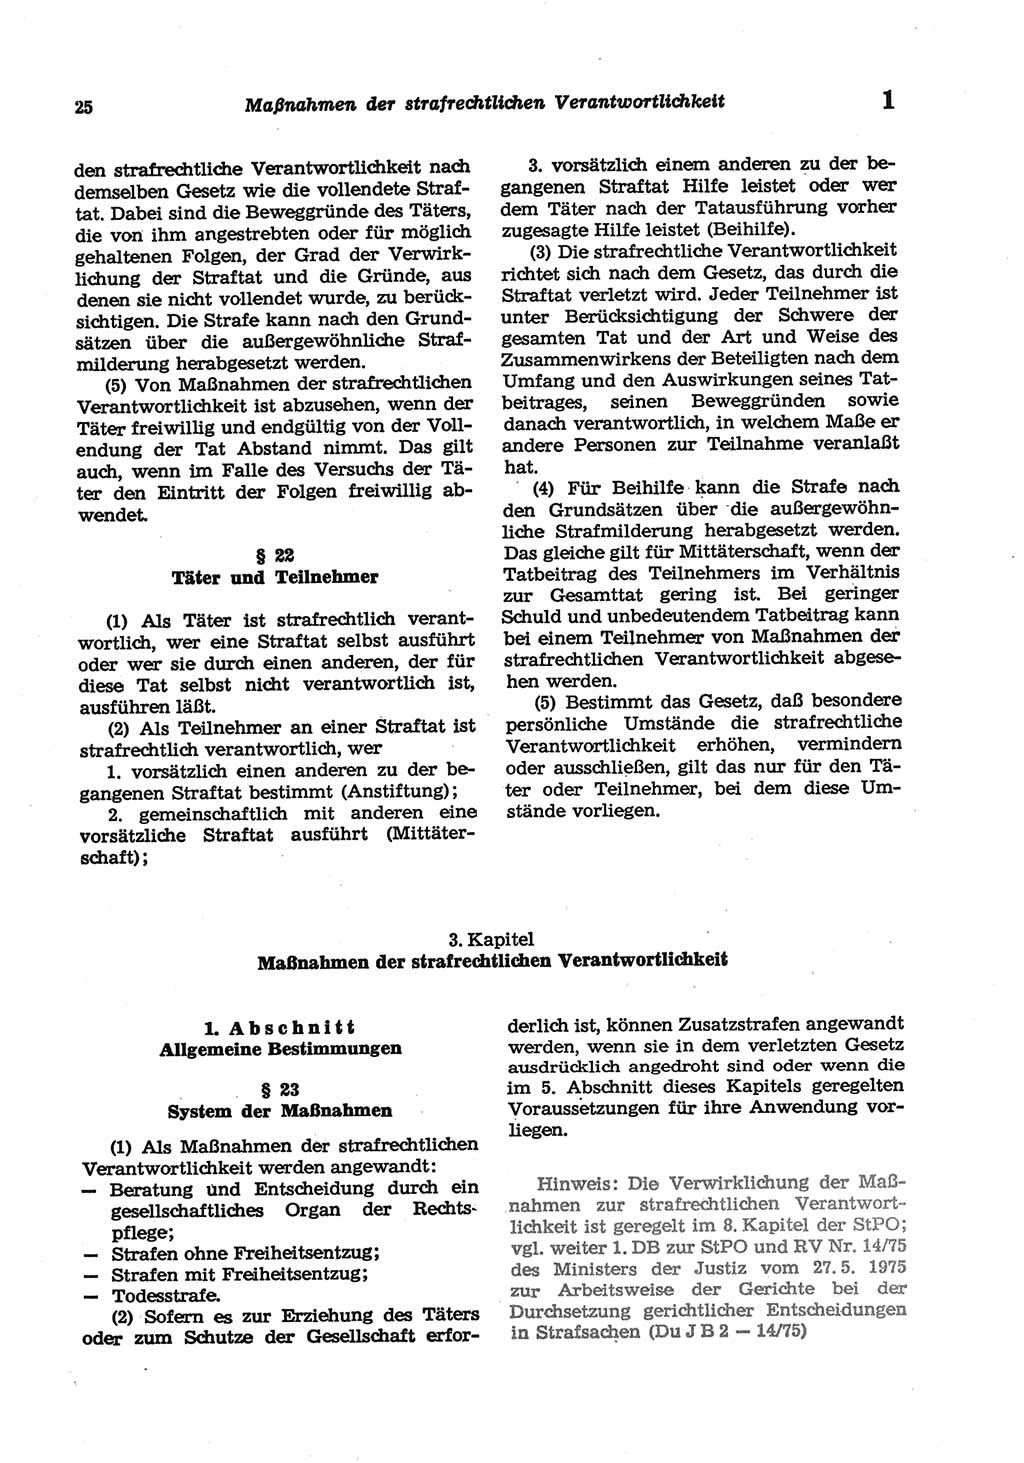 Strafgesetzbuch (StGB) der Deutschen Demokratischen Republik (DDR) und angrenzende Gesetze und Bestimmungen 1977, Seite 25 (StGB DDR Ges. Best. 1977, S. 25)